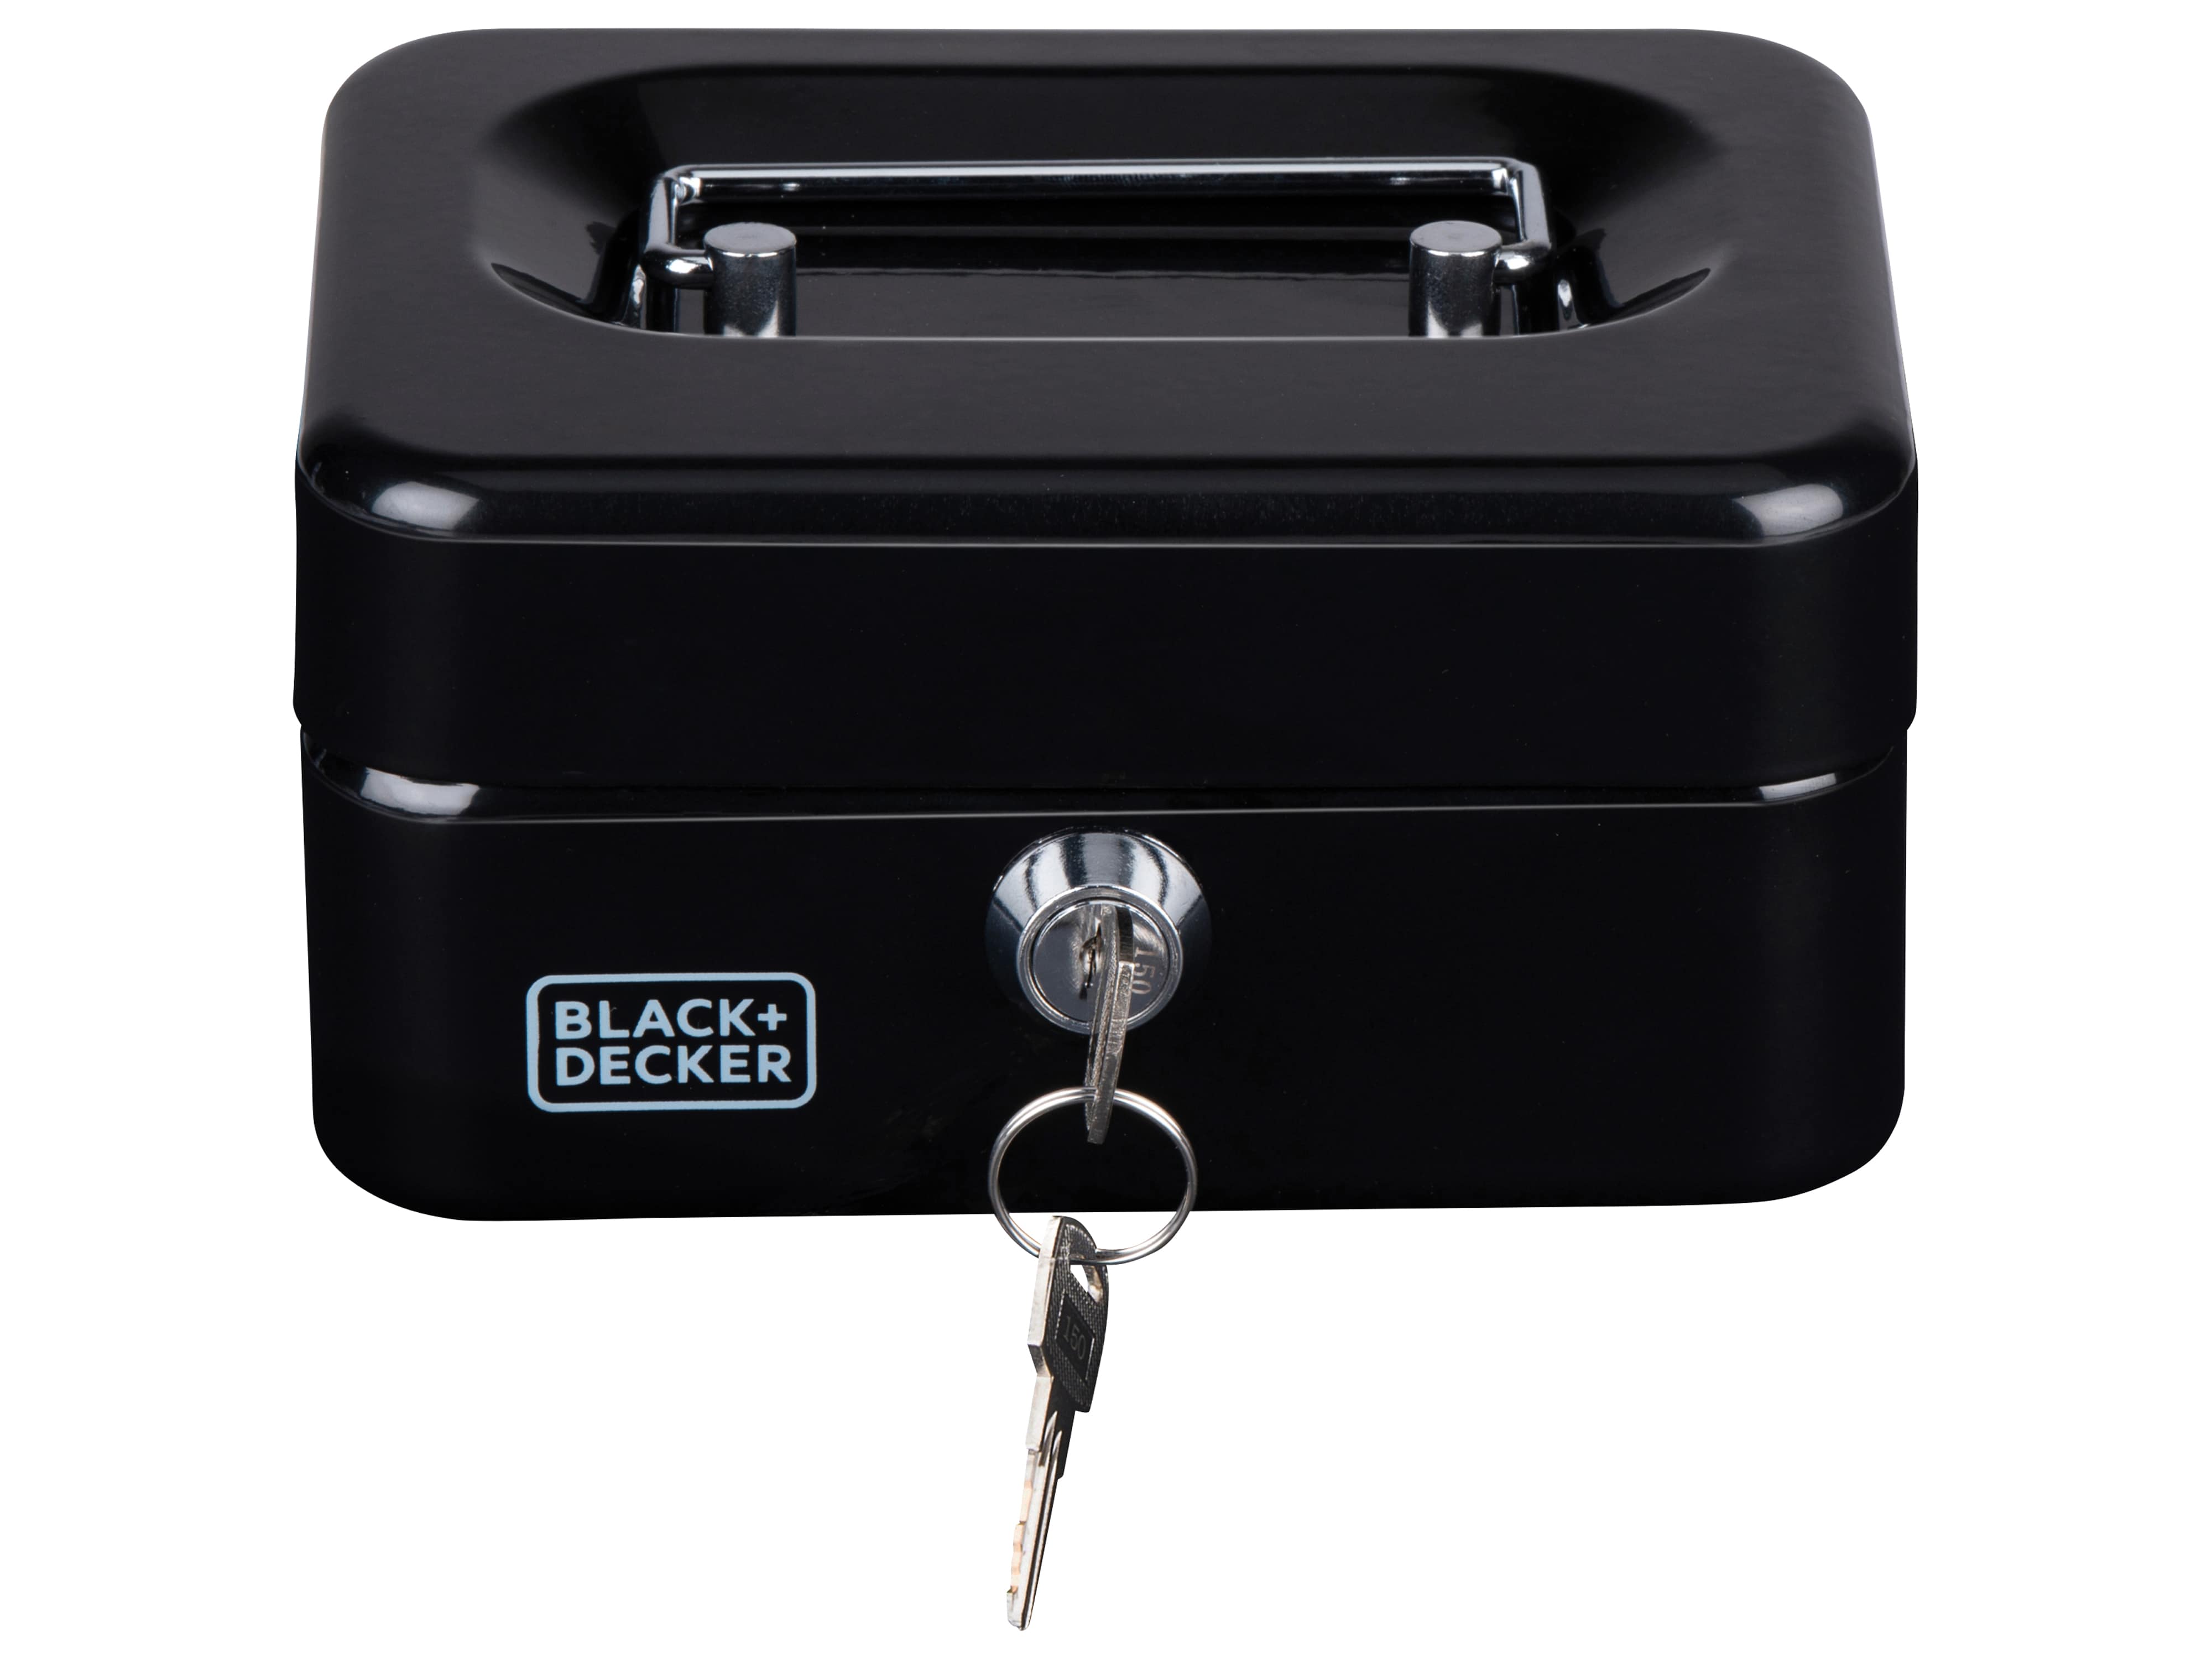 BLACK & DECKER Geldkassette BLACK&DECKER, schwarz, 150x80x118 mm